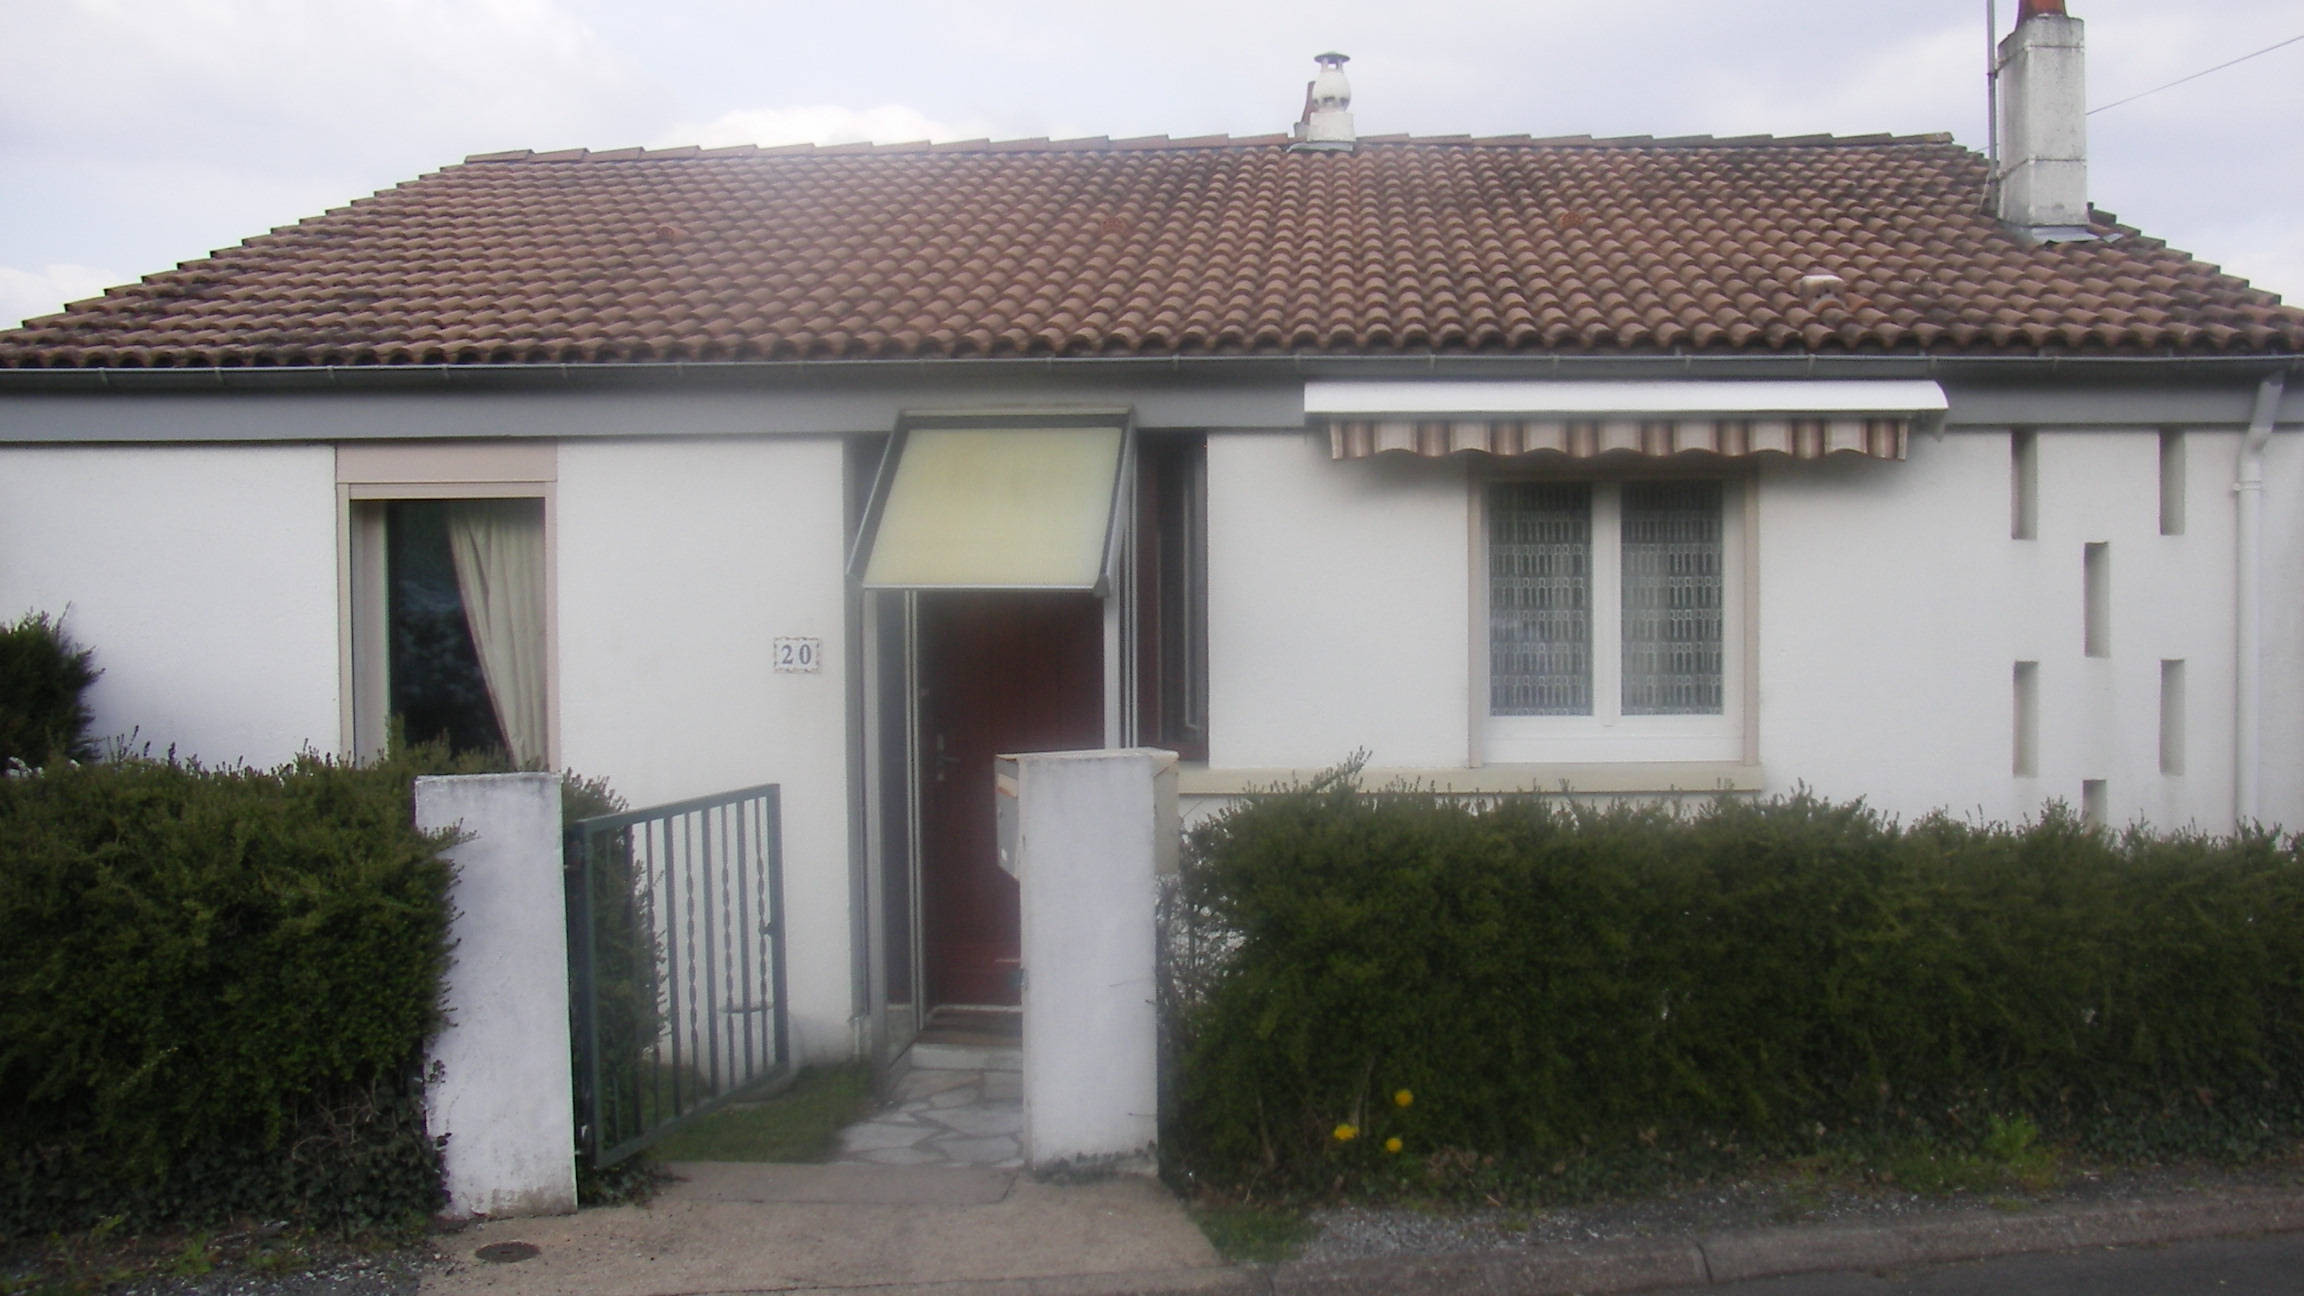 Agence immobilière Nicoullaud achat vente location maison appartement terrain dans la Vienne 86